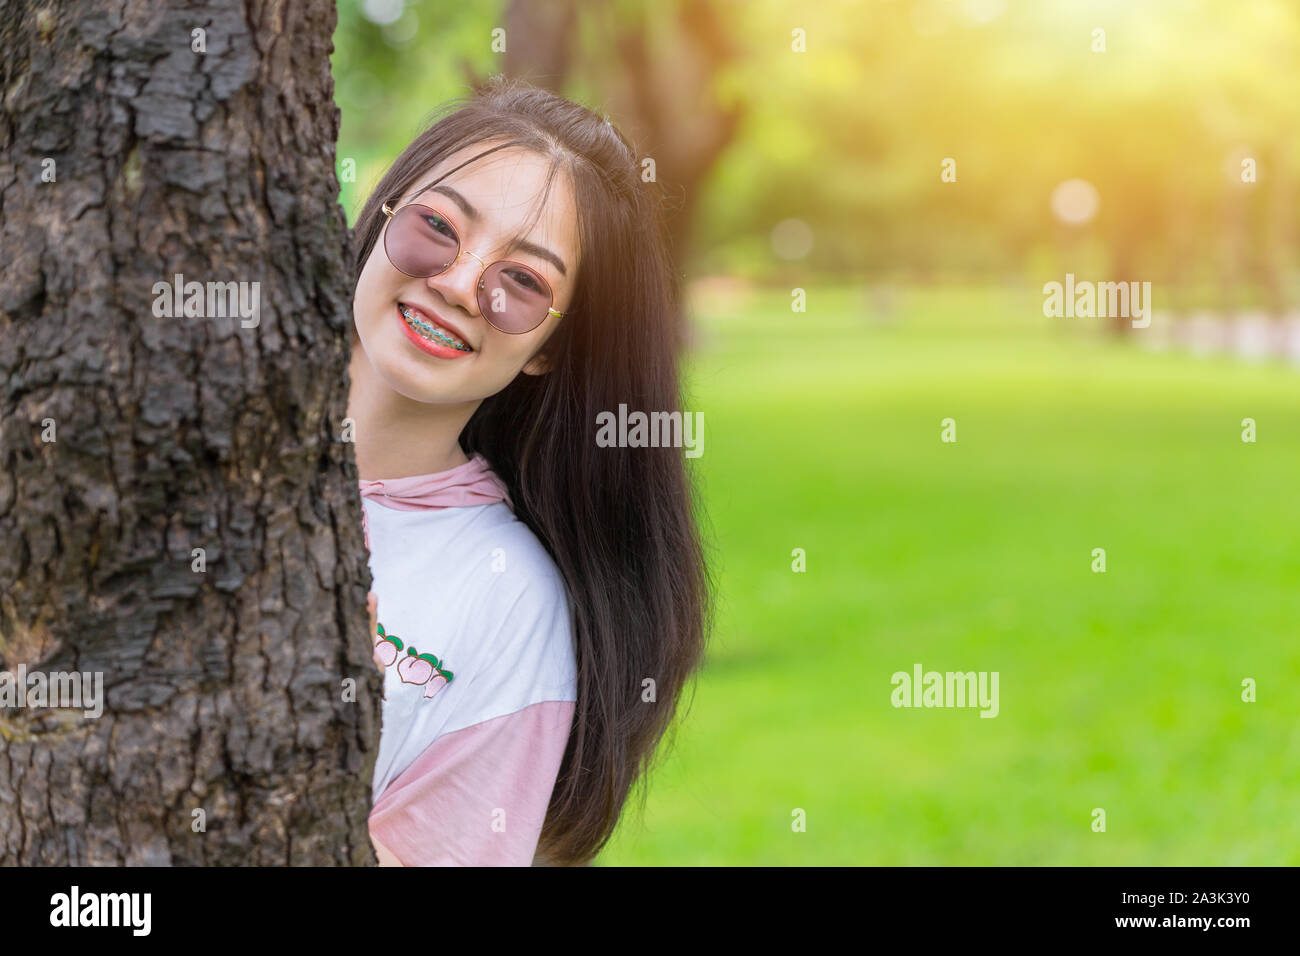 Gerne asiatische Zahnspangen Mädchen tragen Sonnenbrillen gerne Verstecken, Tree Park Outdoor Portrait suchen. Stockfoto